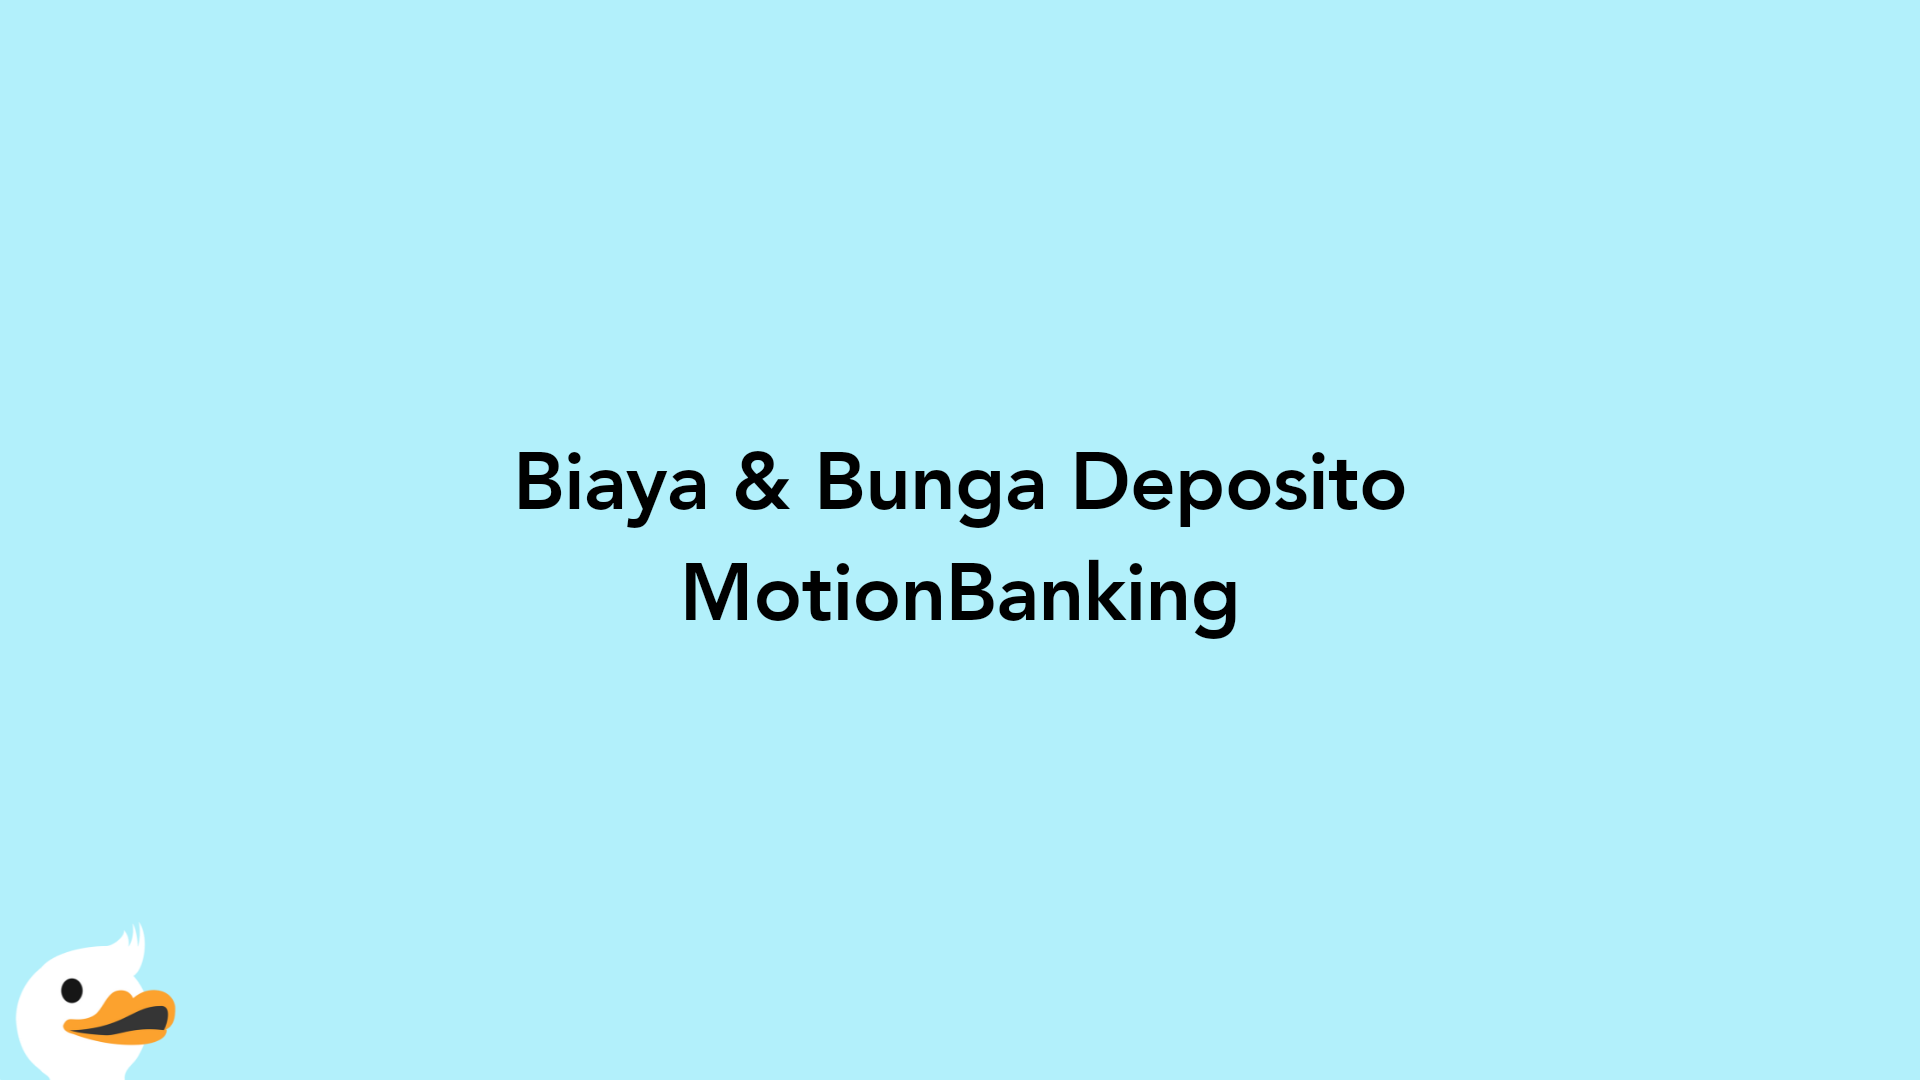 Biaya & Bunga Deposito MotionBanking